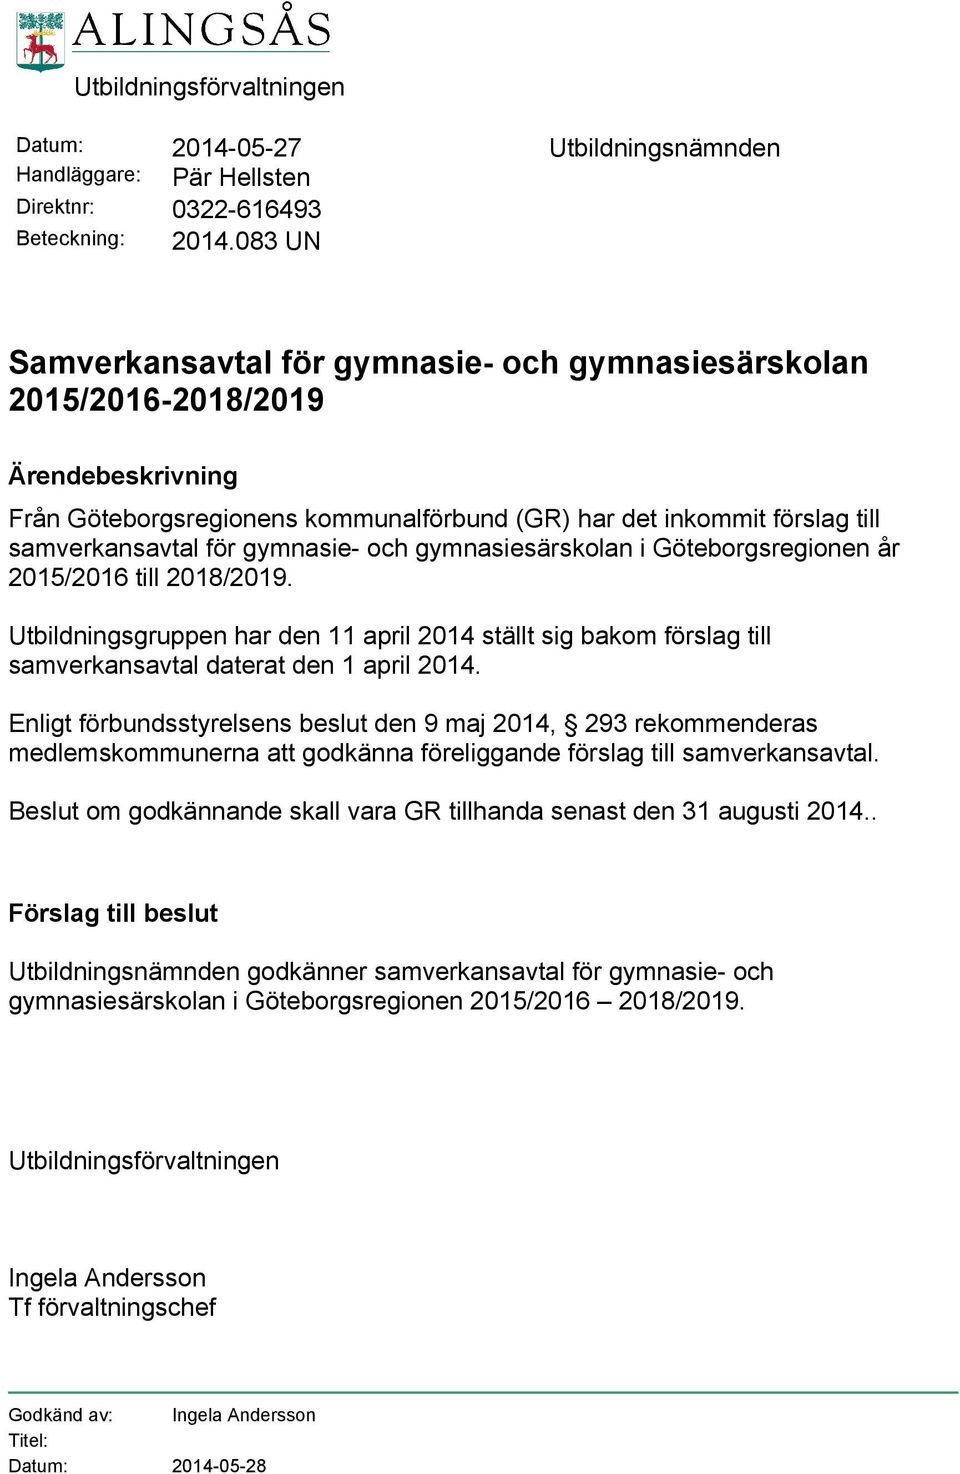 gymnasie- och gymnasiesärskolan i Göteborgsregionen år 2015/2016 till 2018/2019. Utbildningsgruppen har den 11 april 2014 ställt sig bakom förslag till samverkansavtal daterat den 1 april 2014.